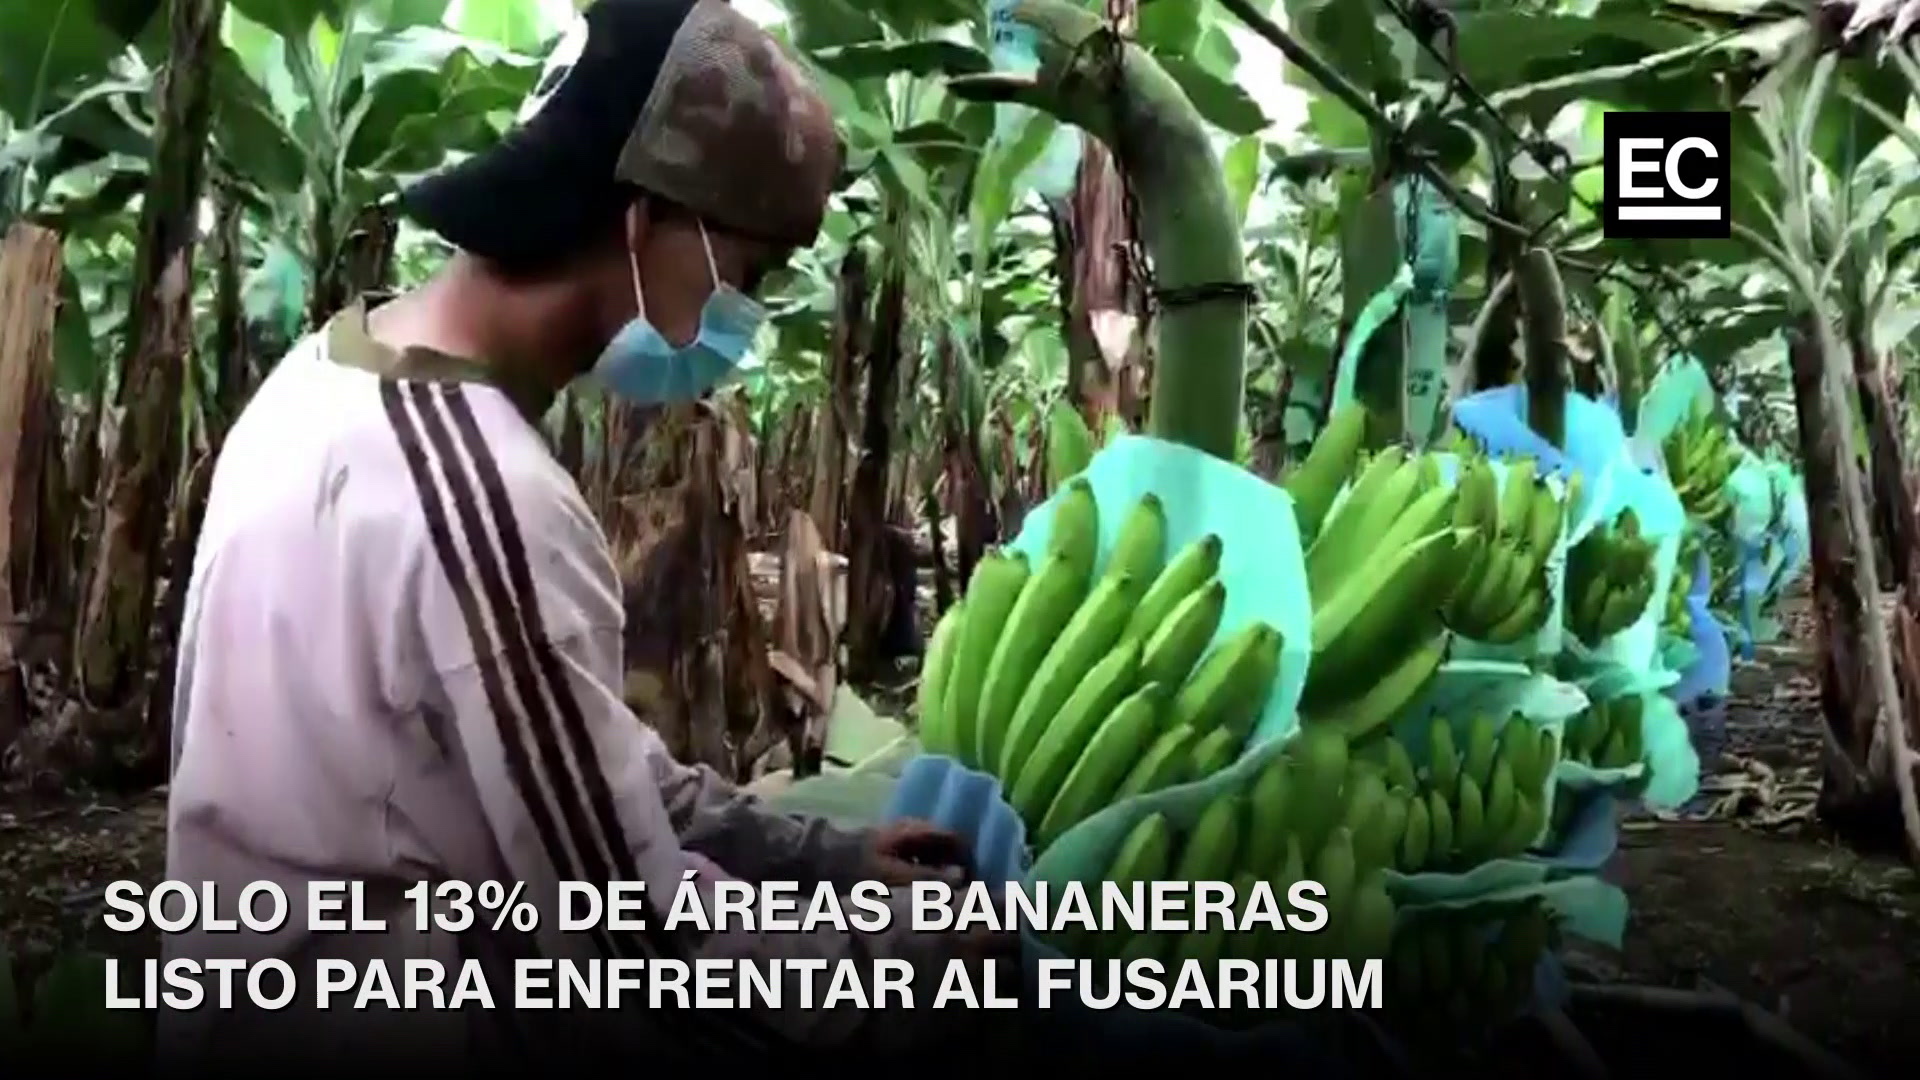 En Ecuador, solo el 13% de las zonas productoras de musáceas (banano, plátano, orito, entre otros) cuenta con infraestructura completa relacionada a medidas de bioseguridad contra el Fusarium Raza 4. Captura video